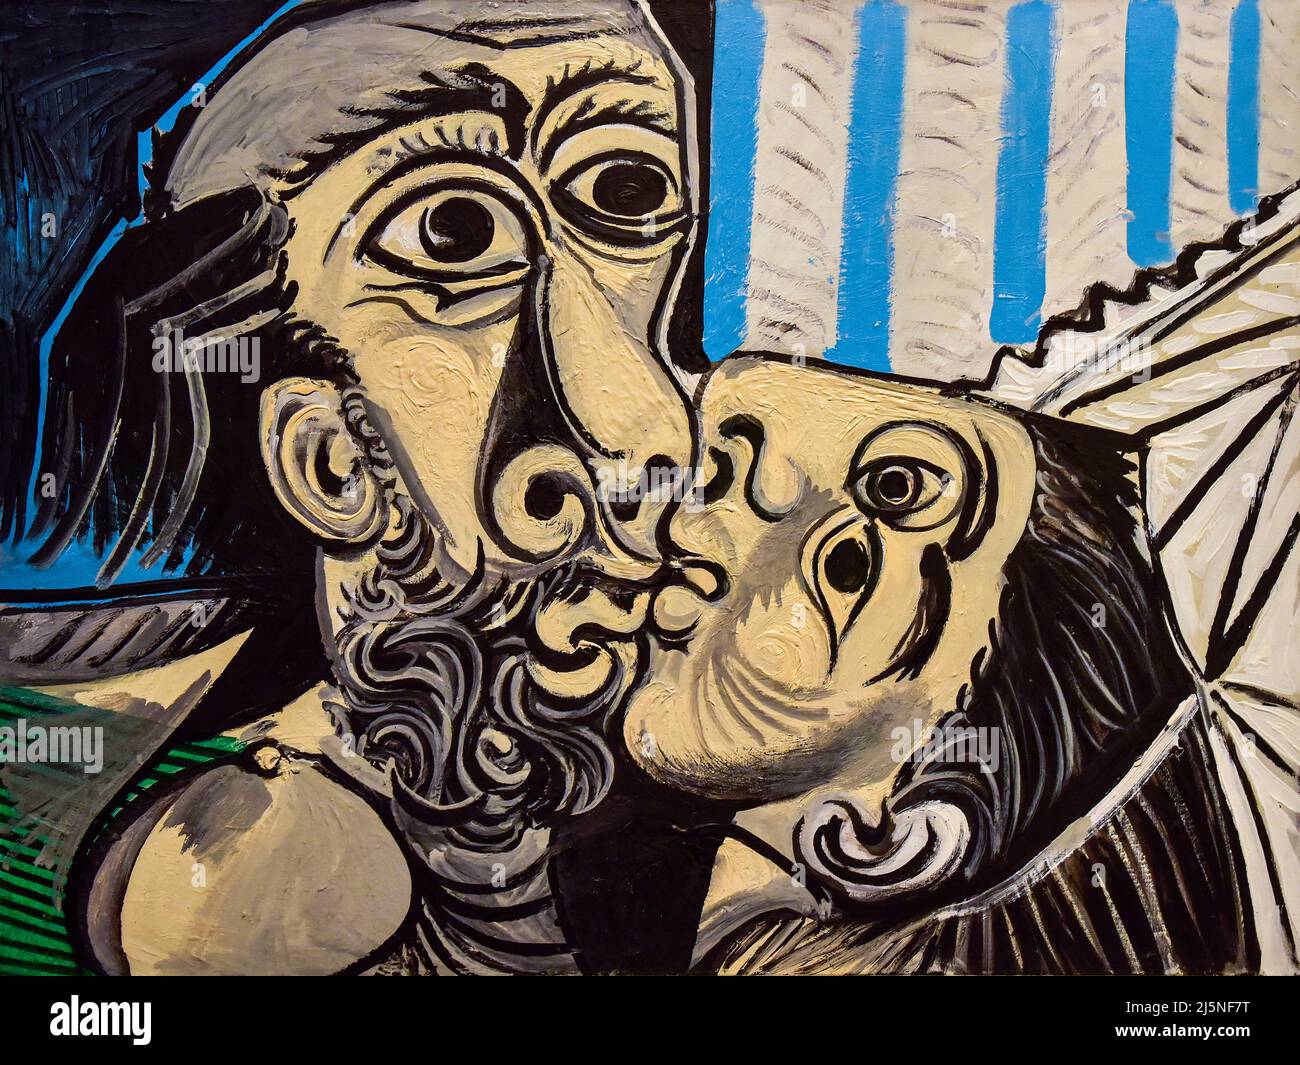 Pablo Picasso peinture, le Baiser, le Kiss, huile sur toile, 1969 Banque D'Images